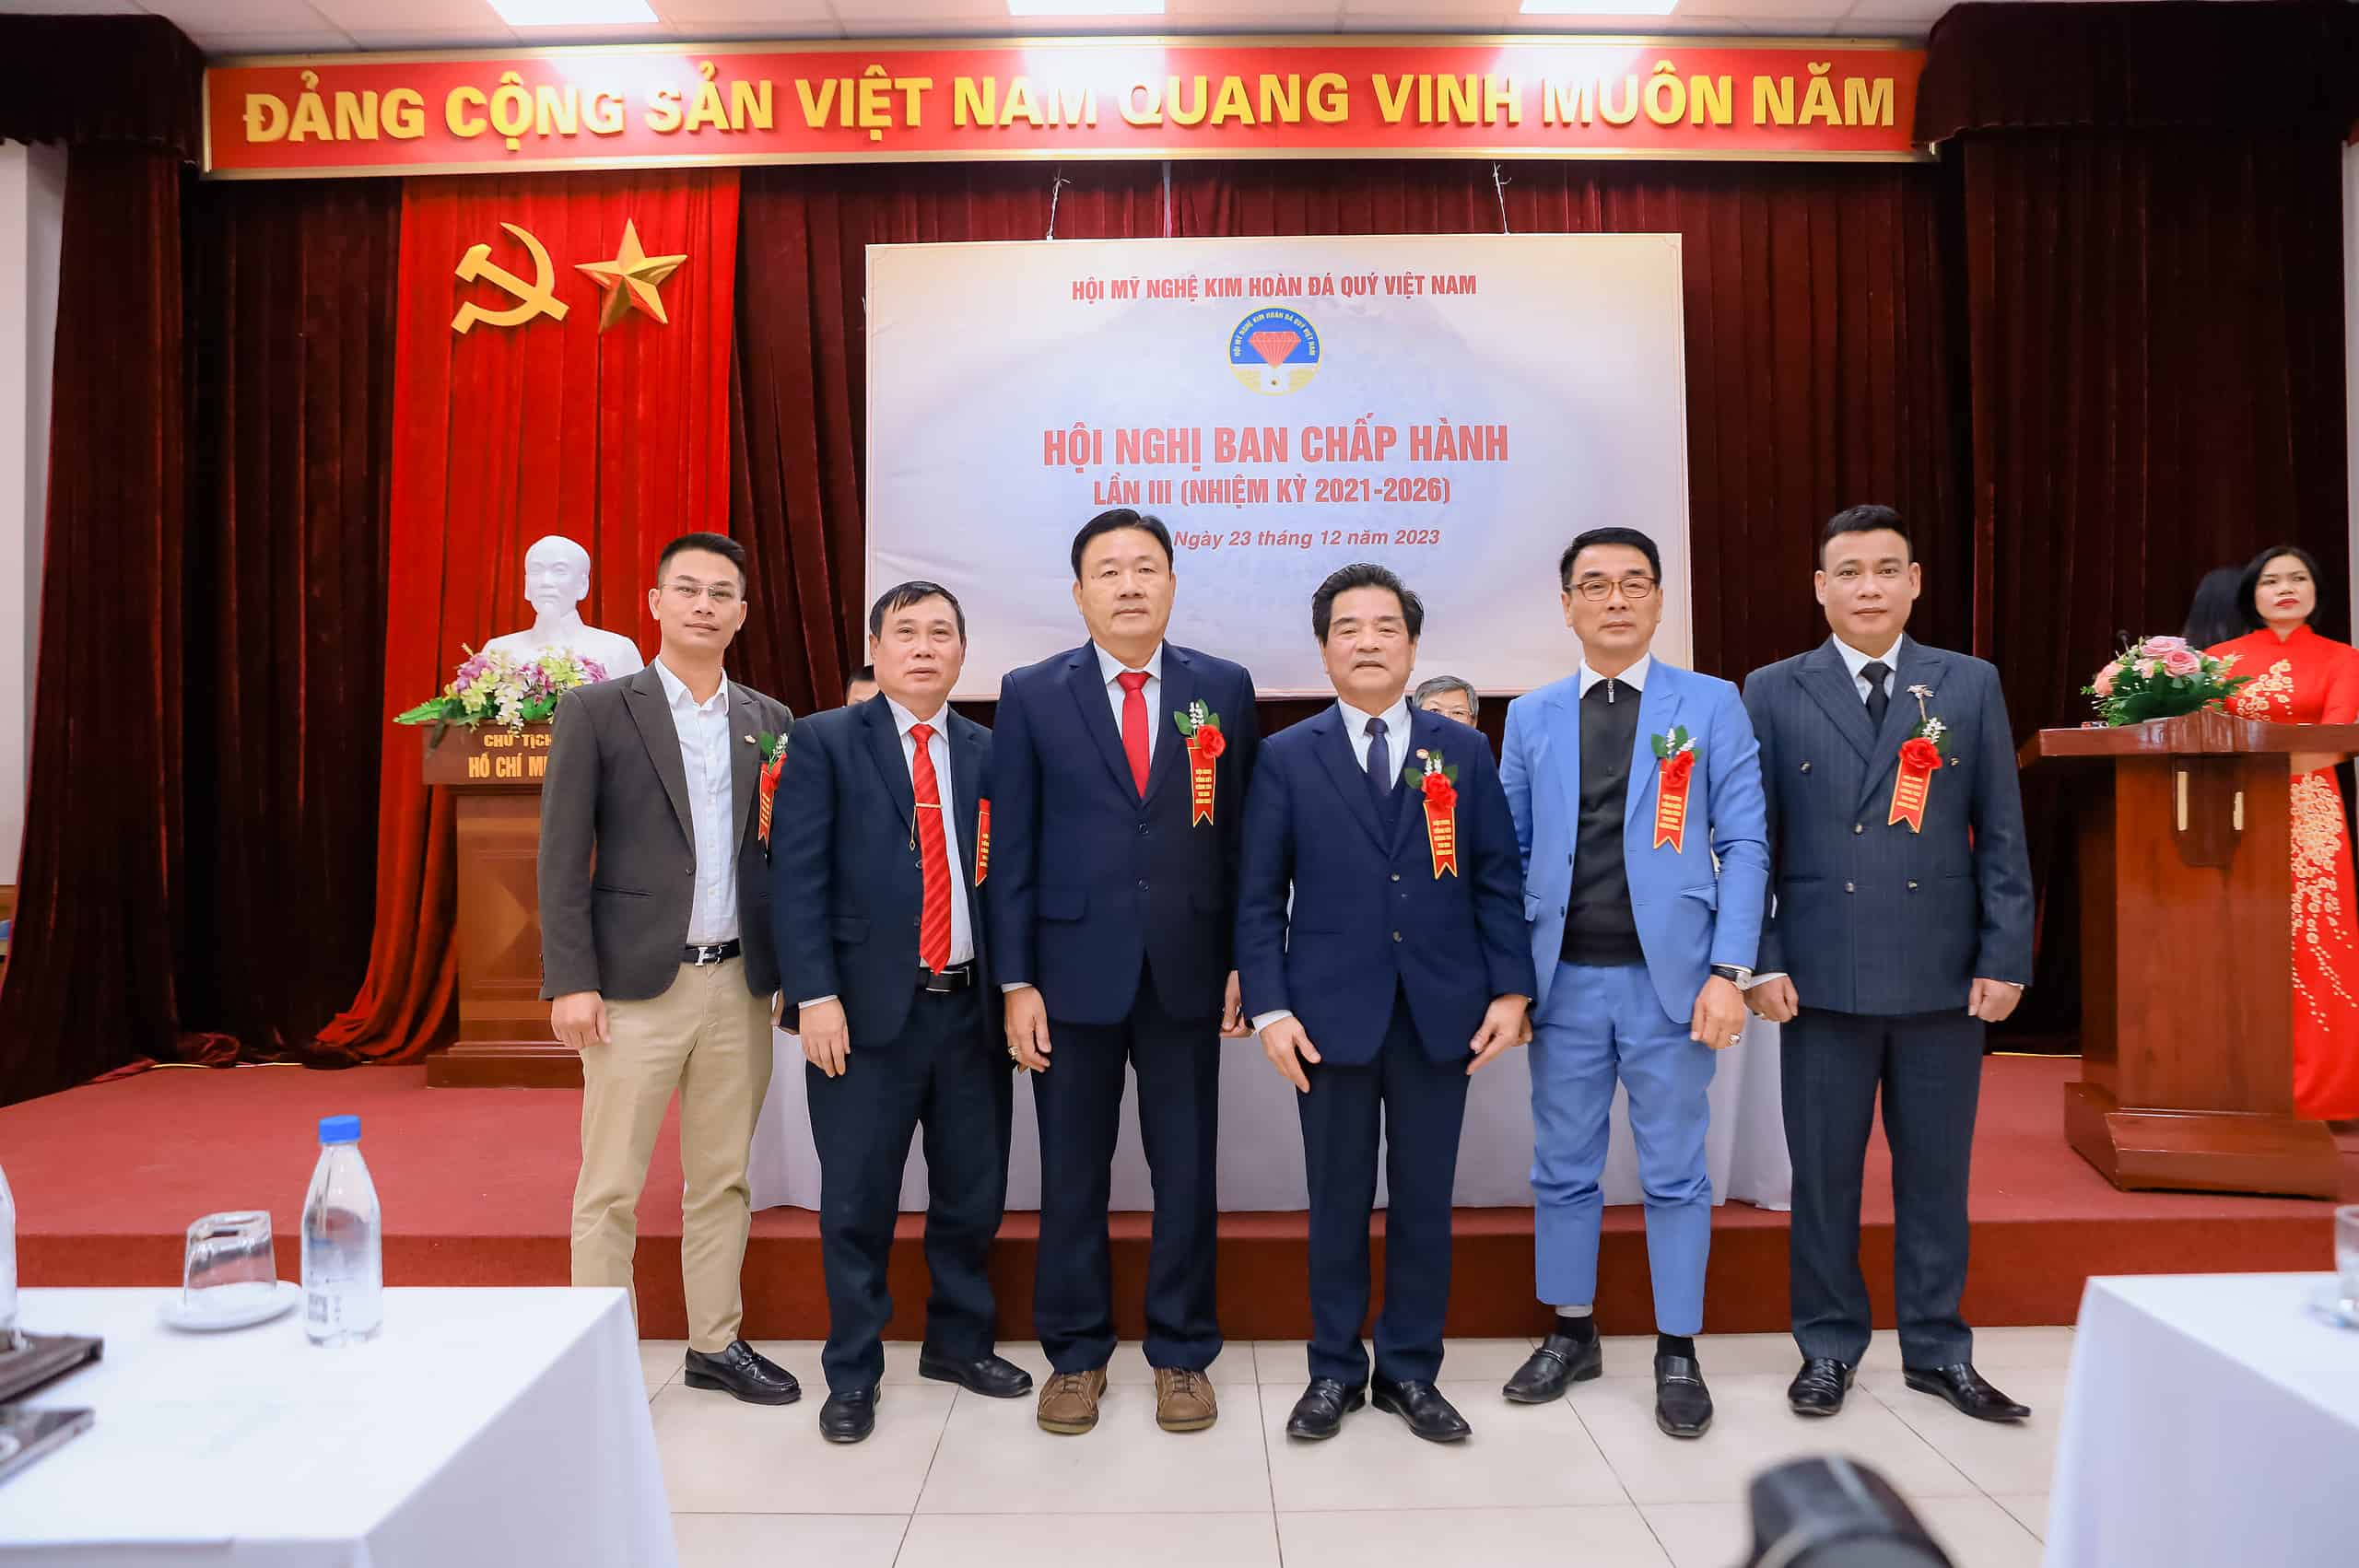 Thành viên Ủy Viên trong ban chấp hành Hội Mỹ Nghệ Kim Hoàn Đá Quý Việt Nam chụp ảnh lưu niệm cùng nhau 